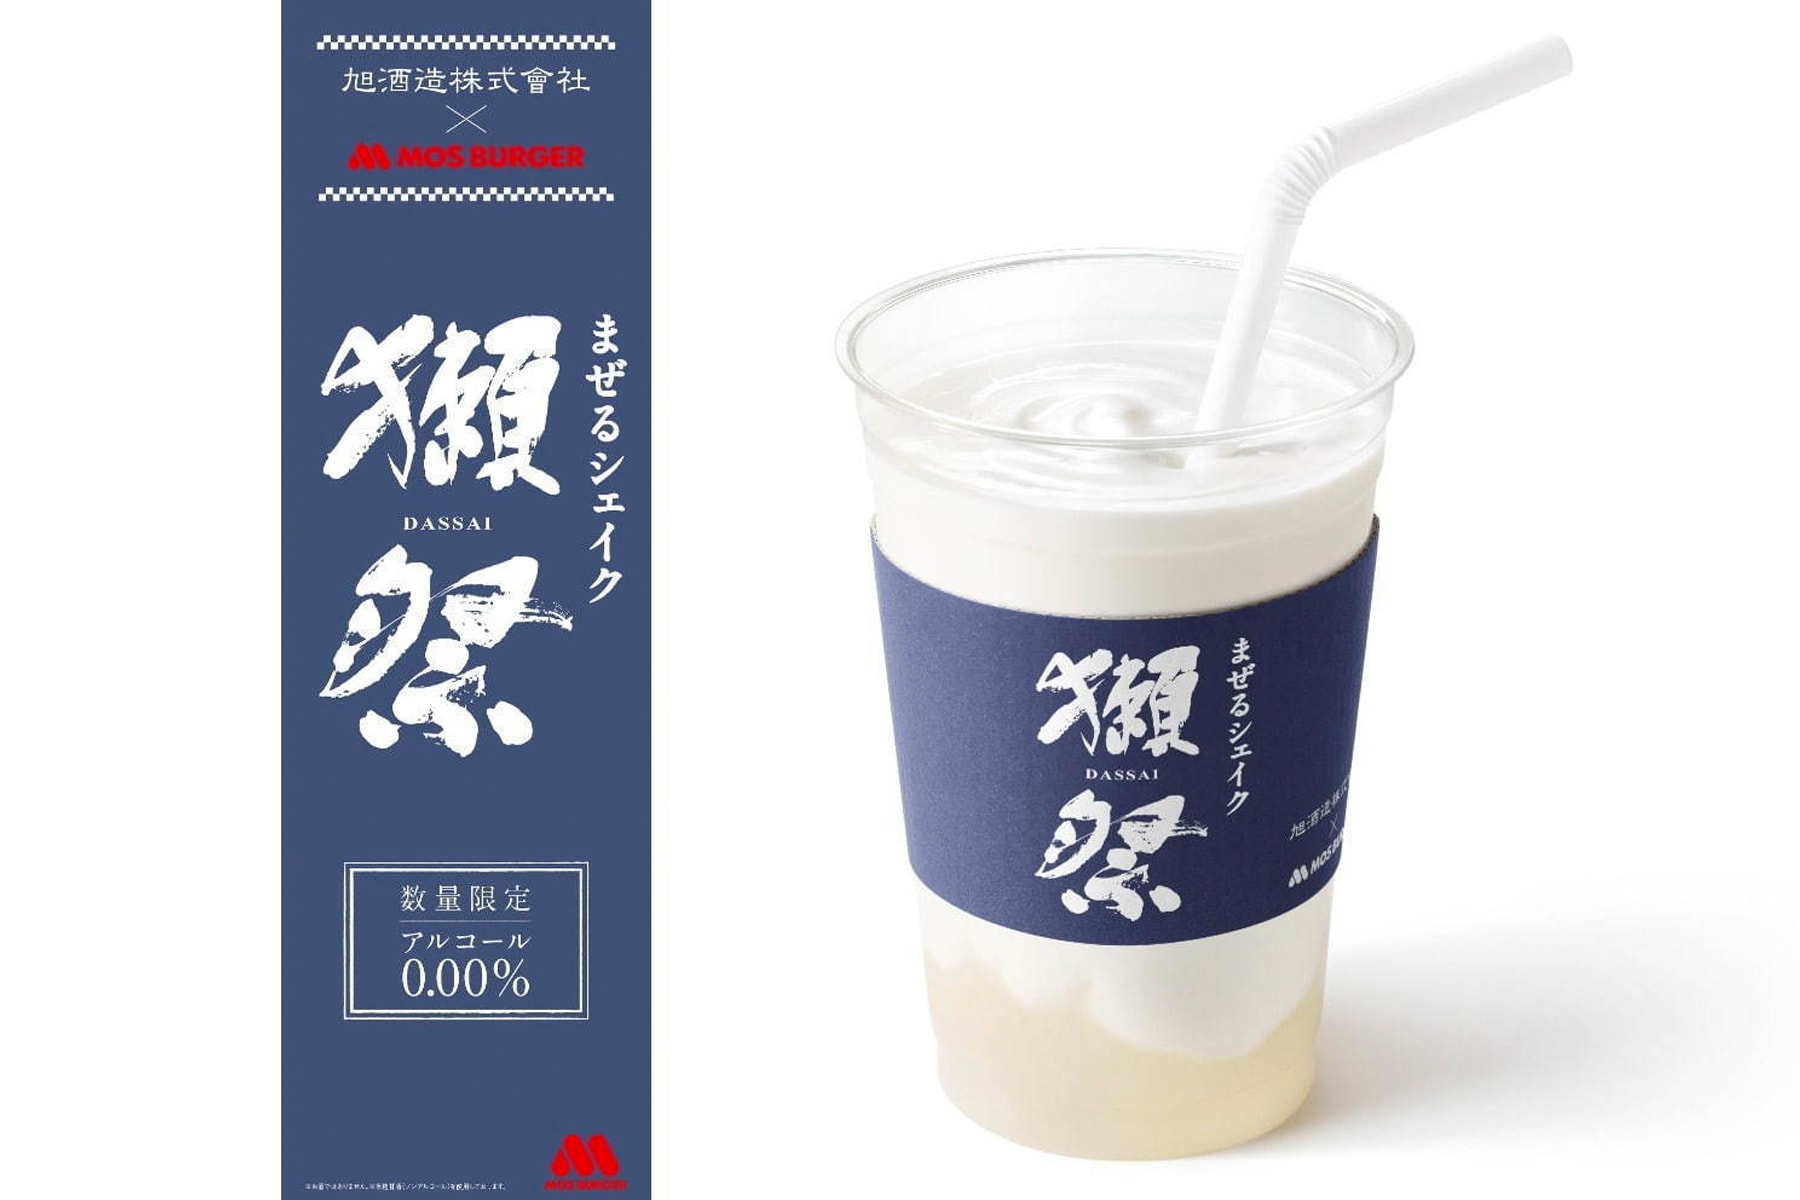 日本 Mos Burger 攜手知名清酒品牌「獺祭 DASSAI」打造全新「米麴甘酒」口味奶昔